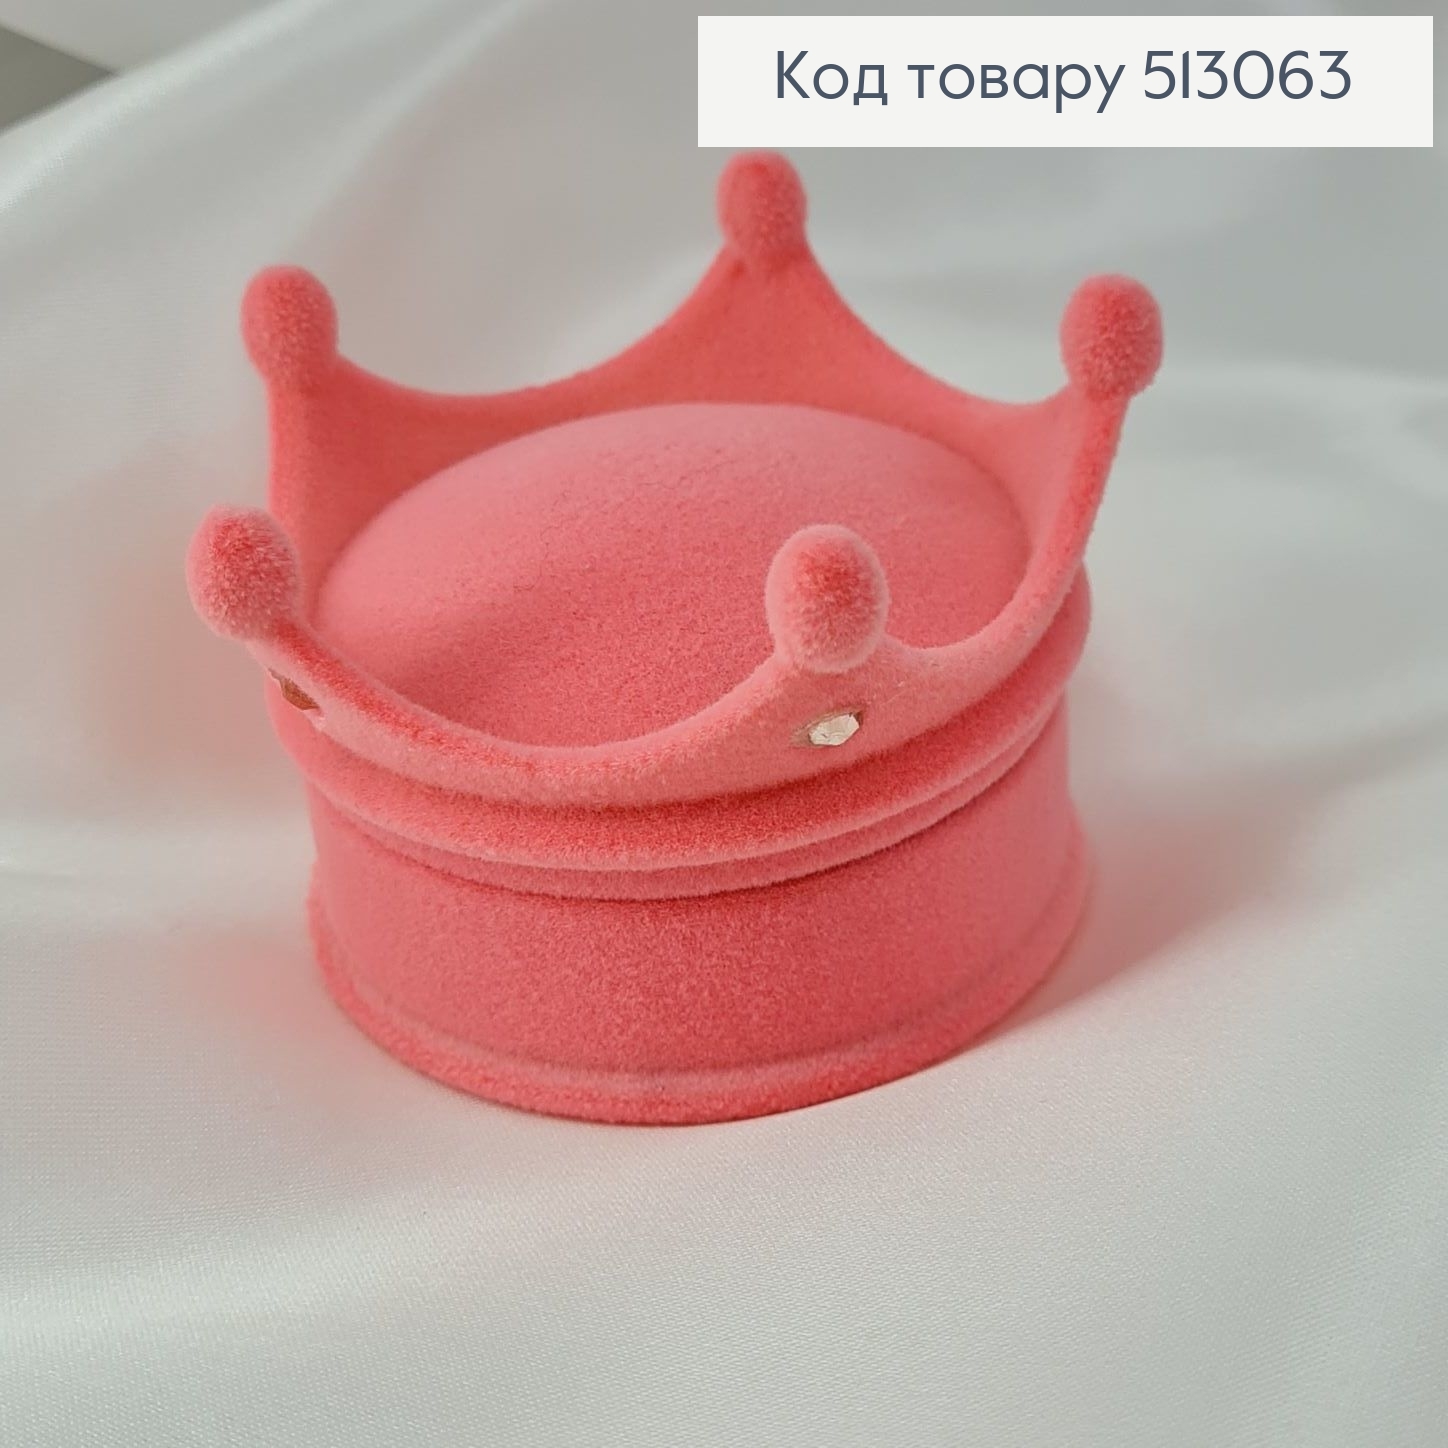 Коробка велюр Корона с камнями розовая, 5,5х5,5х2см 513063 фото 2